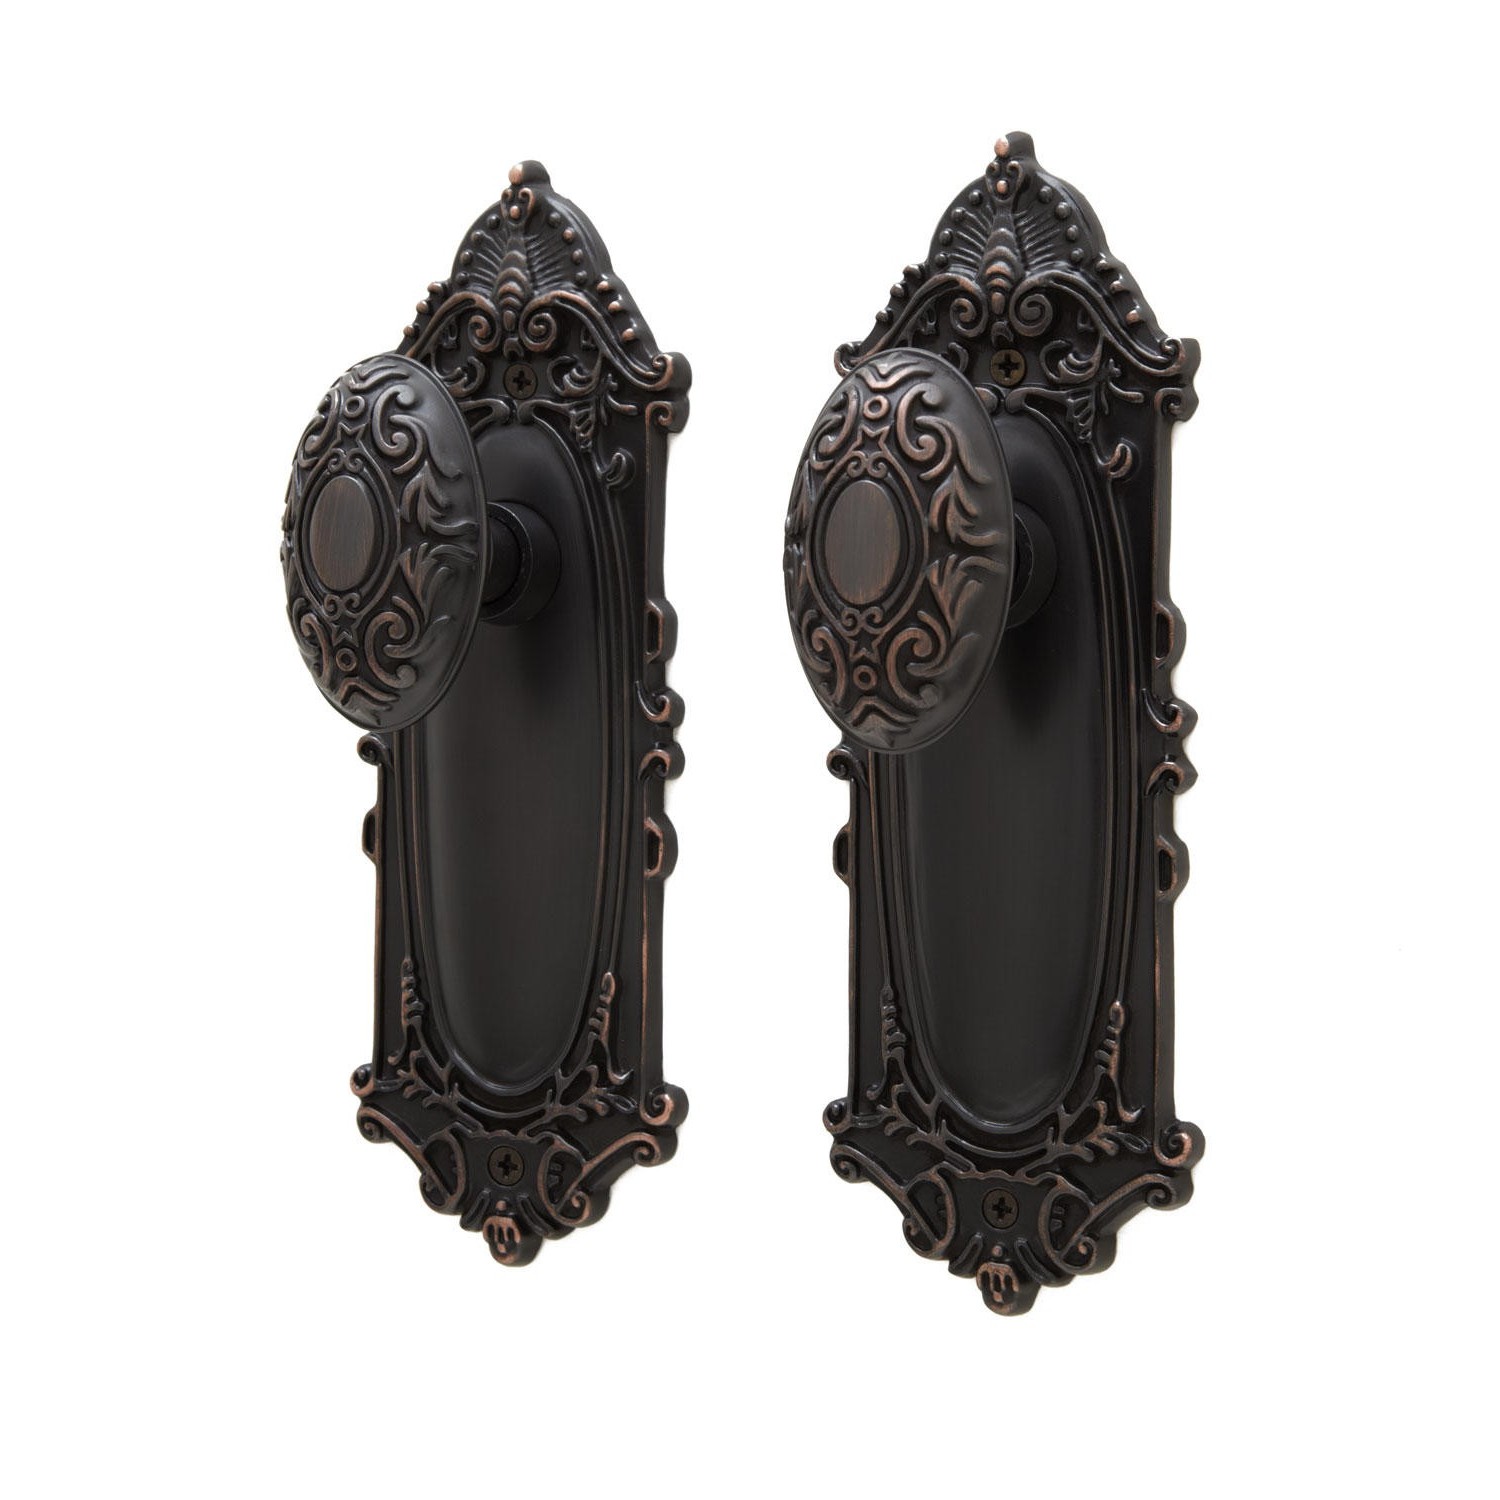 Antique bronze door knobs